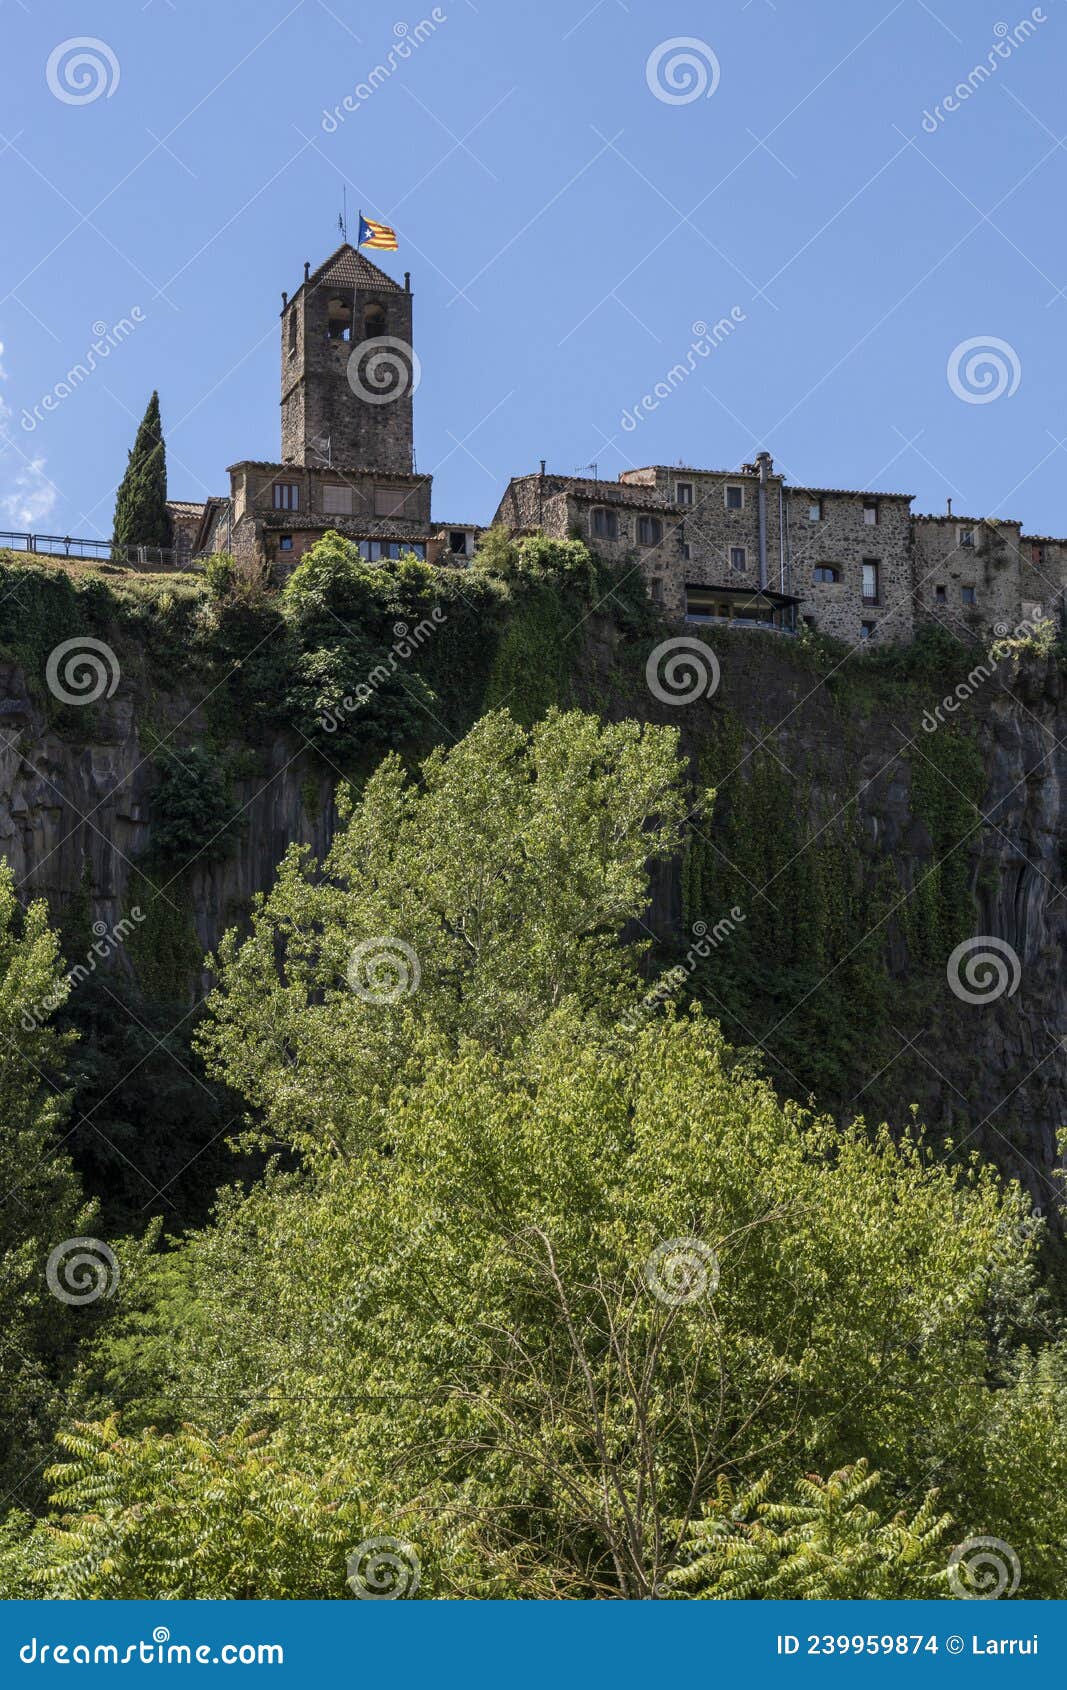 140+ Castellfollit De La Roca Stock Photos, Pictures & Royalty